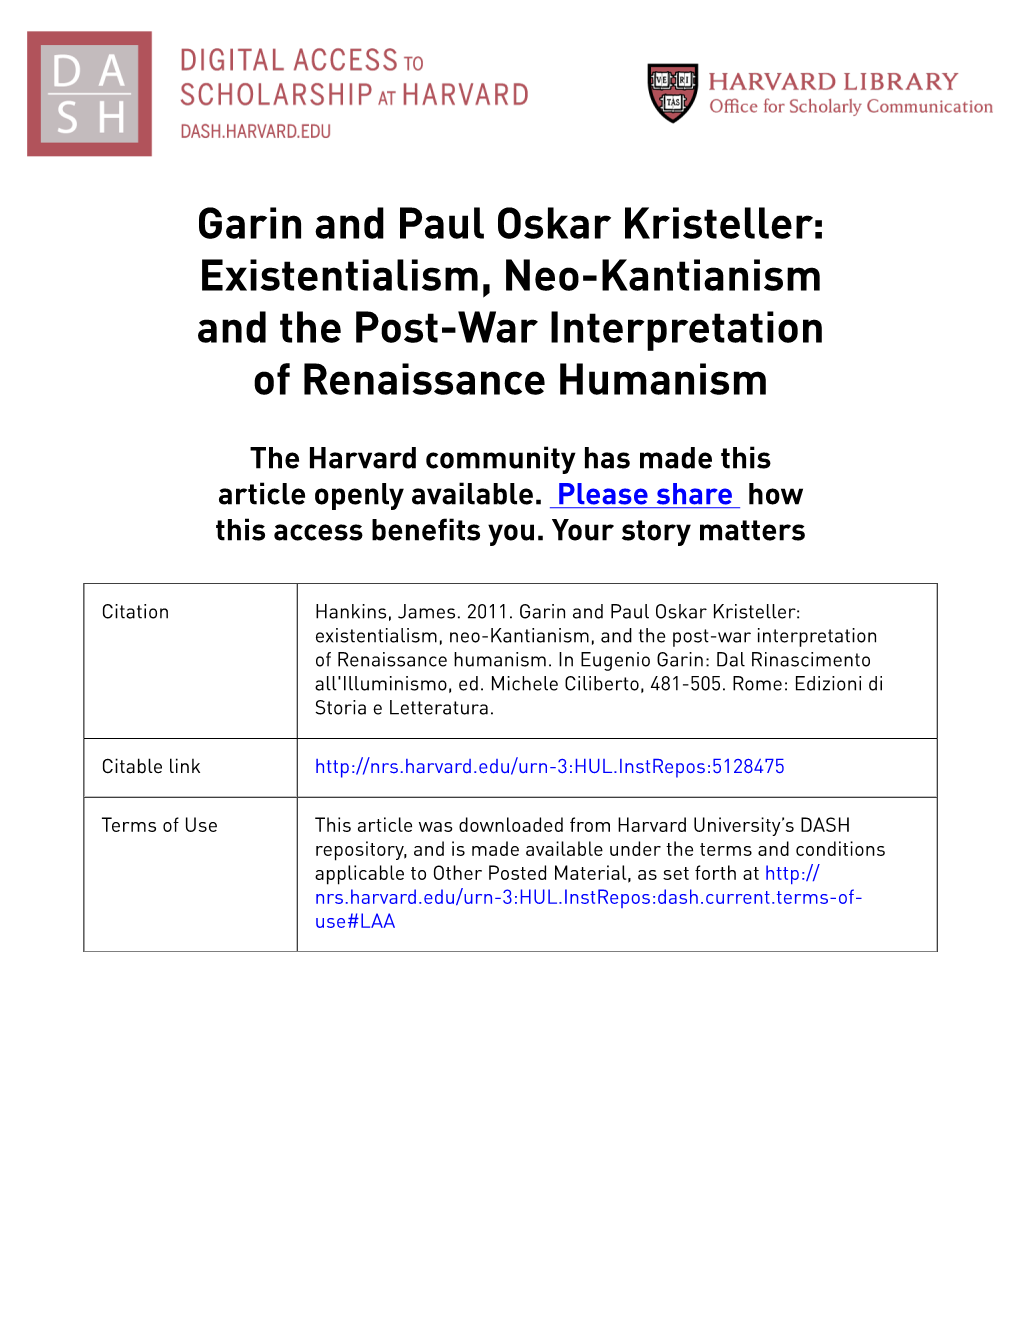 Garin and Paul Oskar Kristeller: Existentialism, Neo-Kantianism and the Post-War Interpretation of Renaissance Humanism